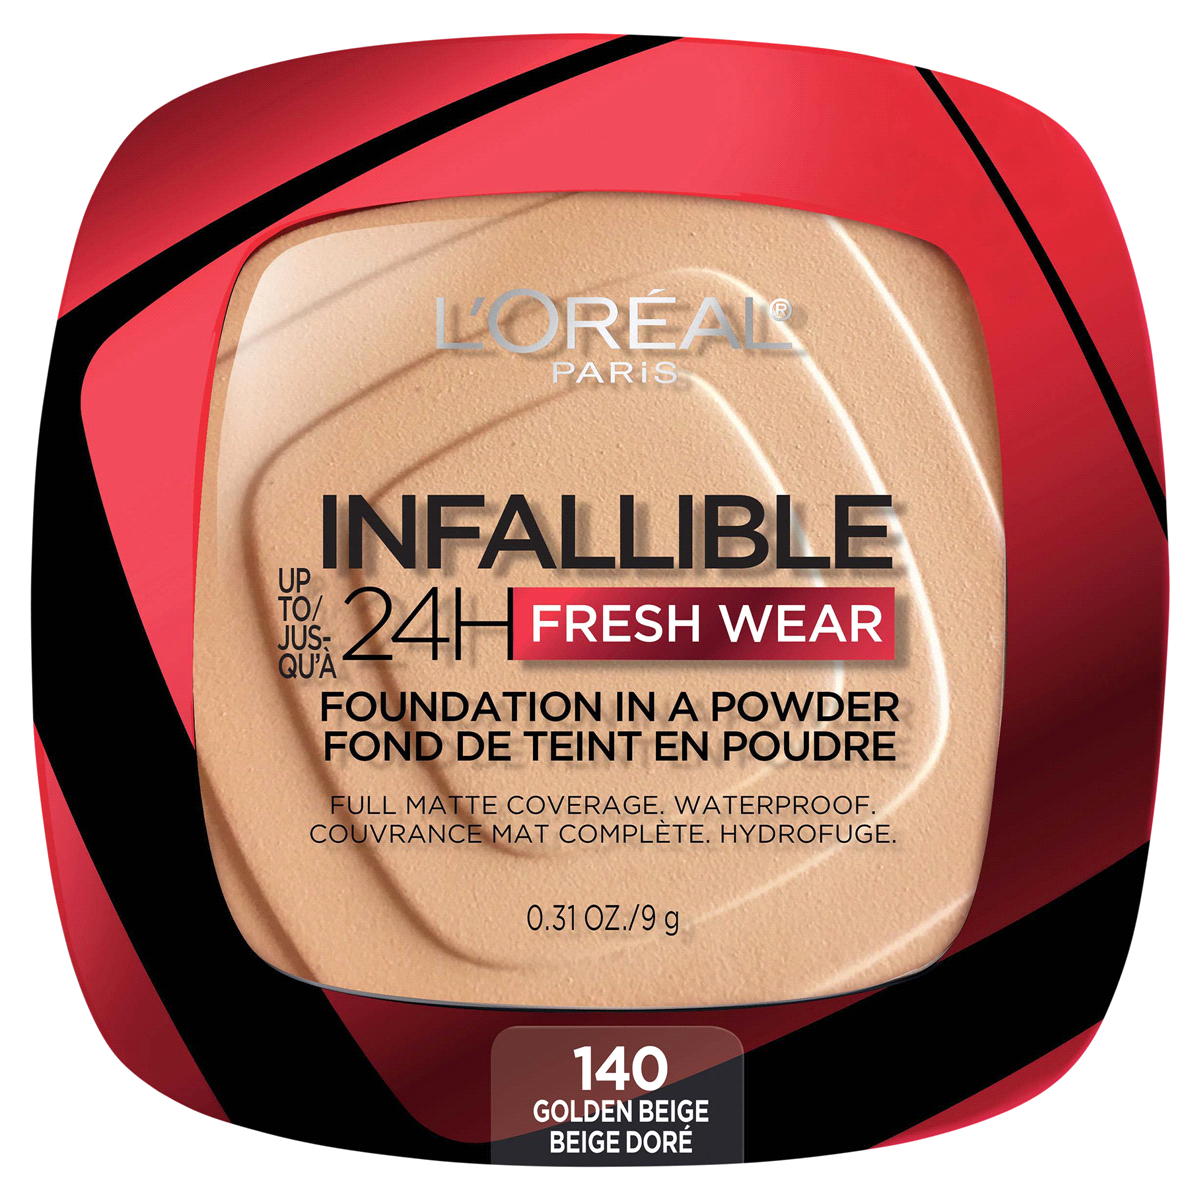 slide 1 of 2, L'Oréal L'Oral Up to 24H Fresh Wear Foundation-in-a-Powder - Golden Beige (140), 0.31 oz